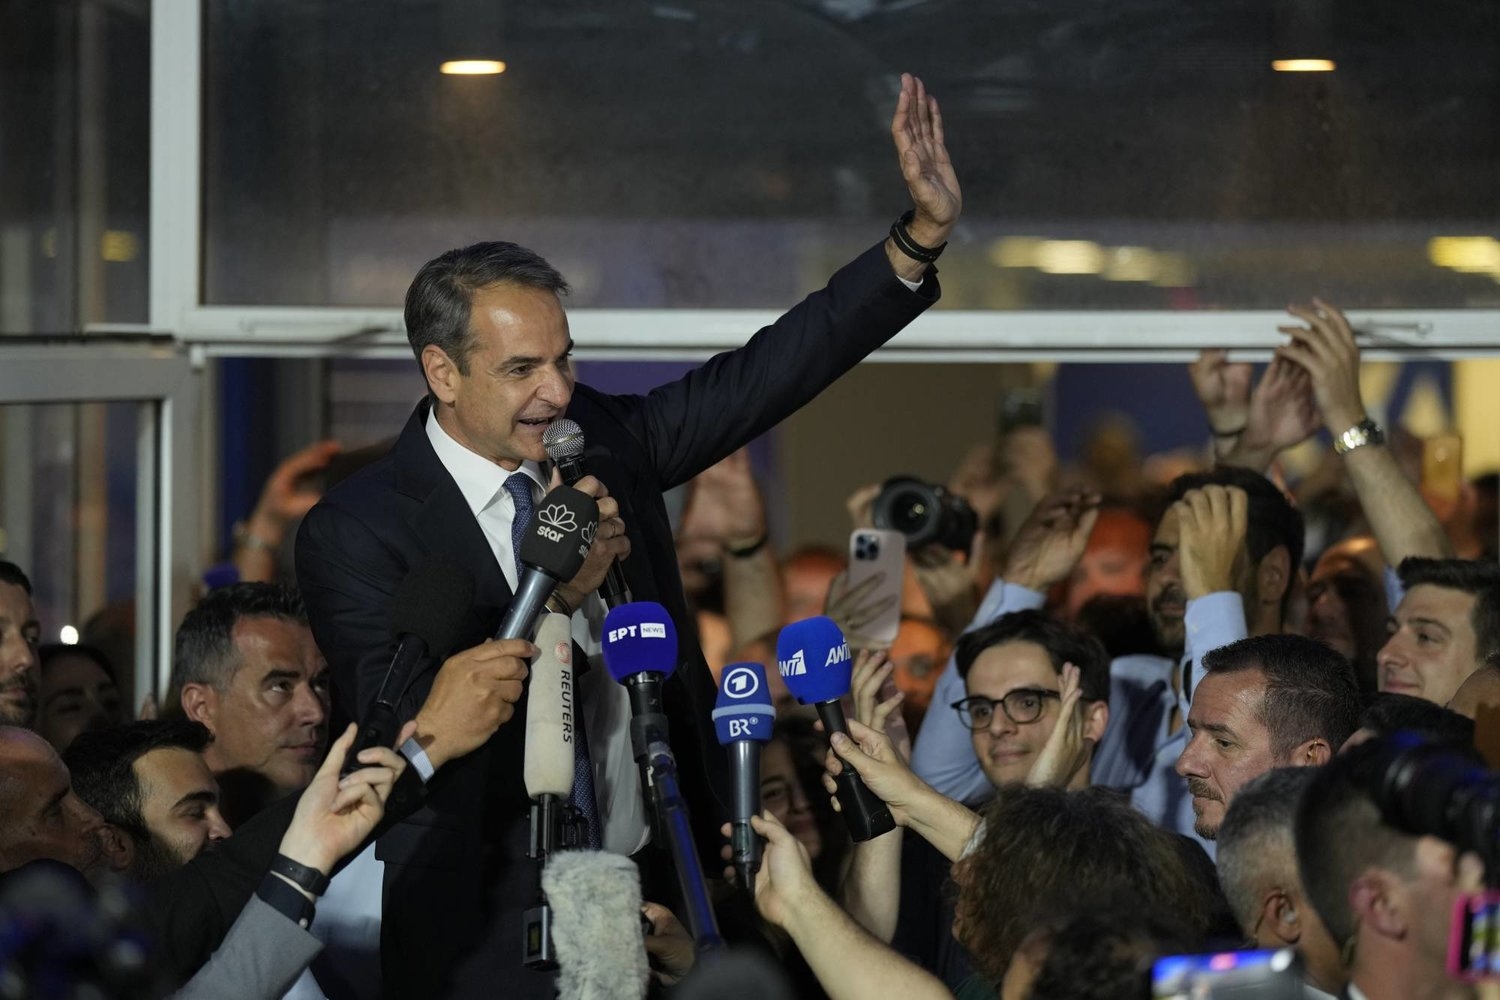 اليونان: الحزب الحاكم يحقق فوزاً ساحقاً في الانتخابات دون الحصول على أغلبية